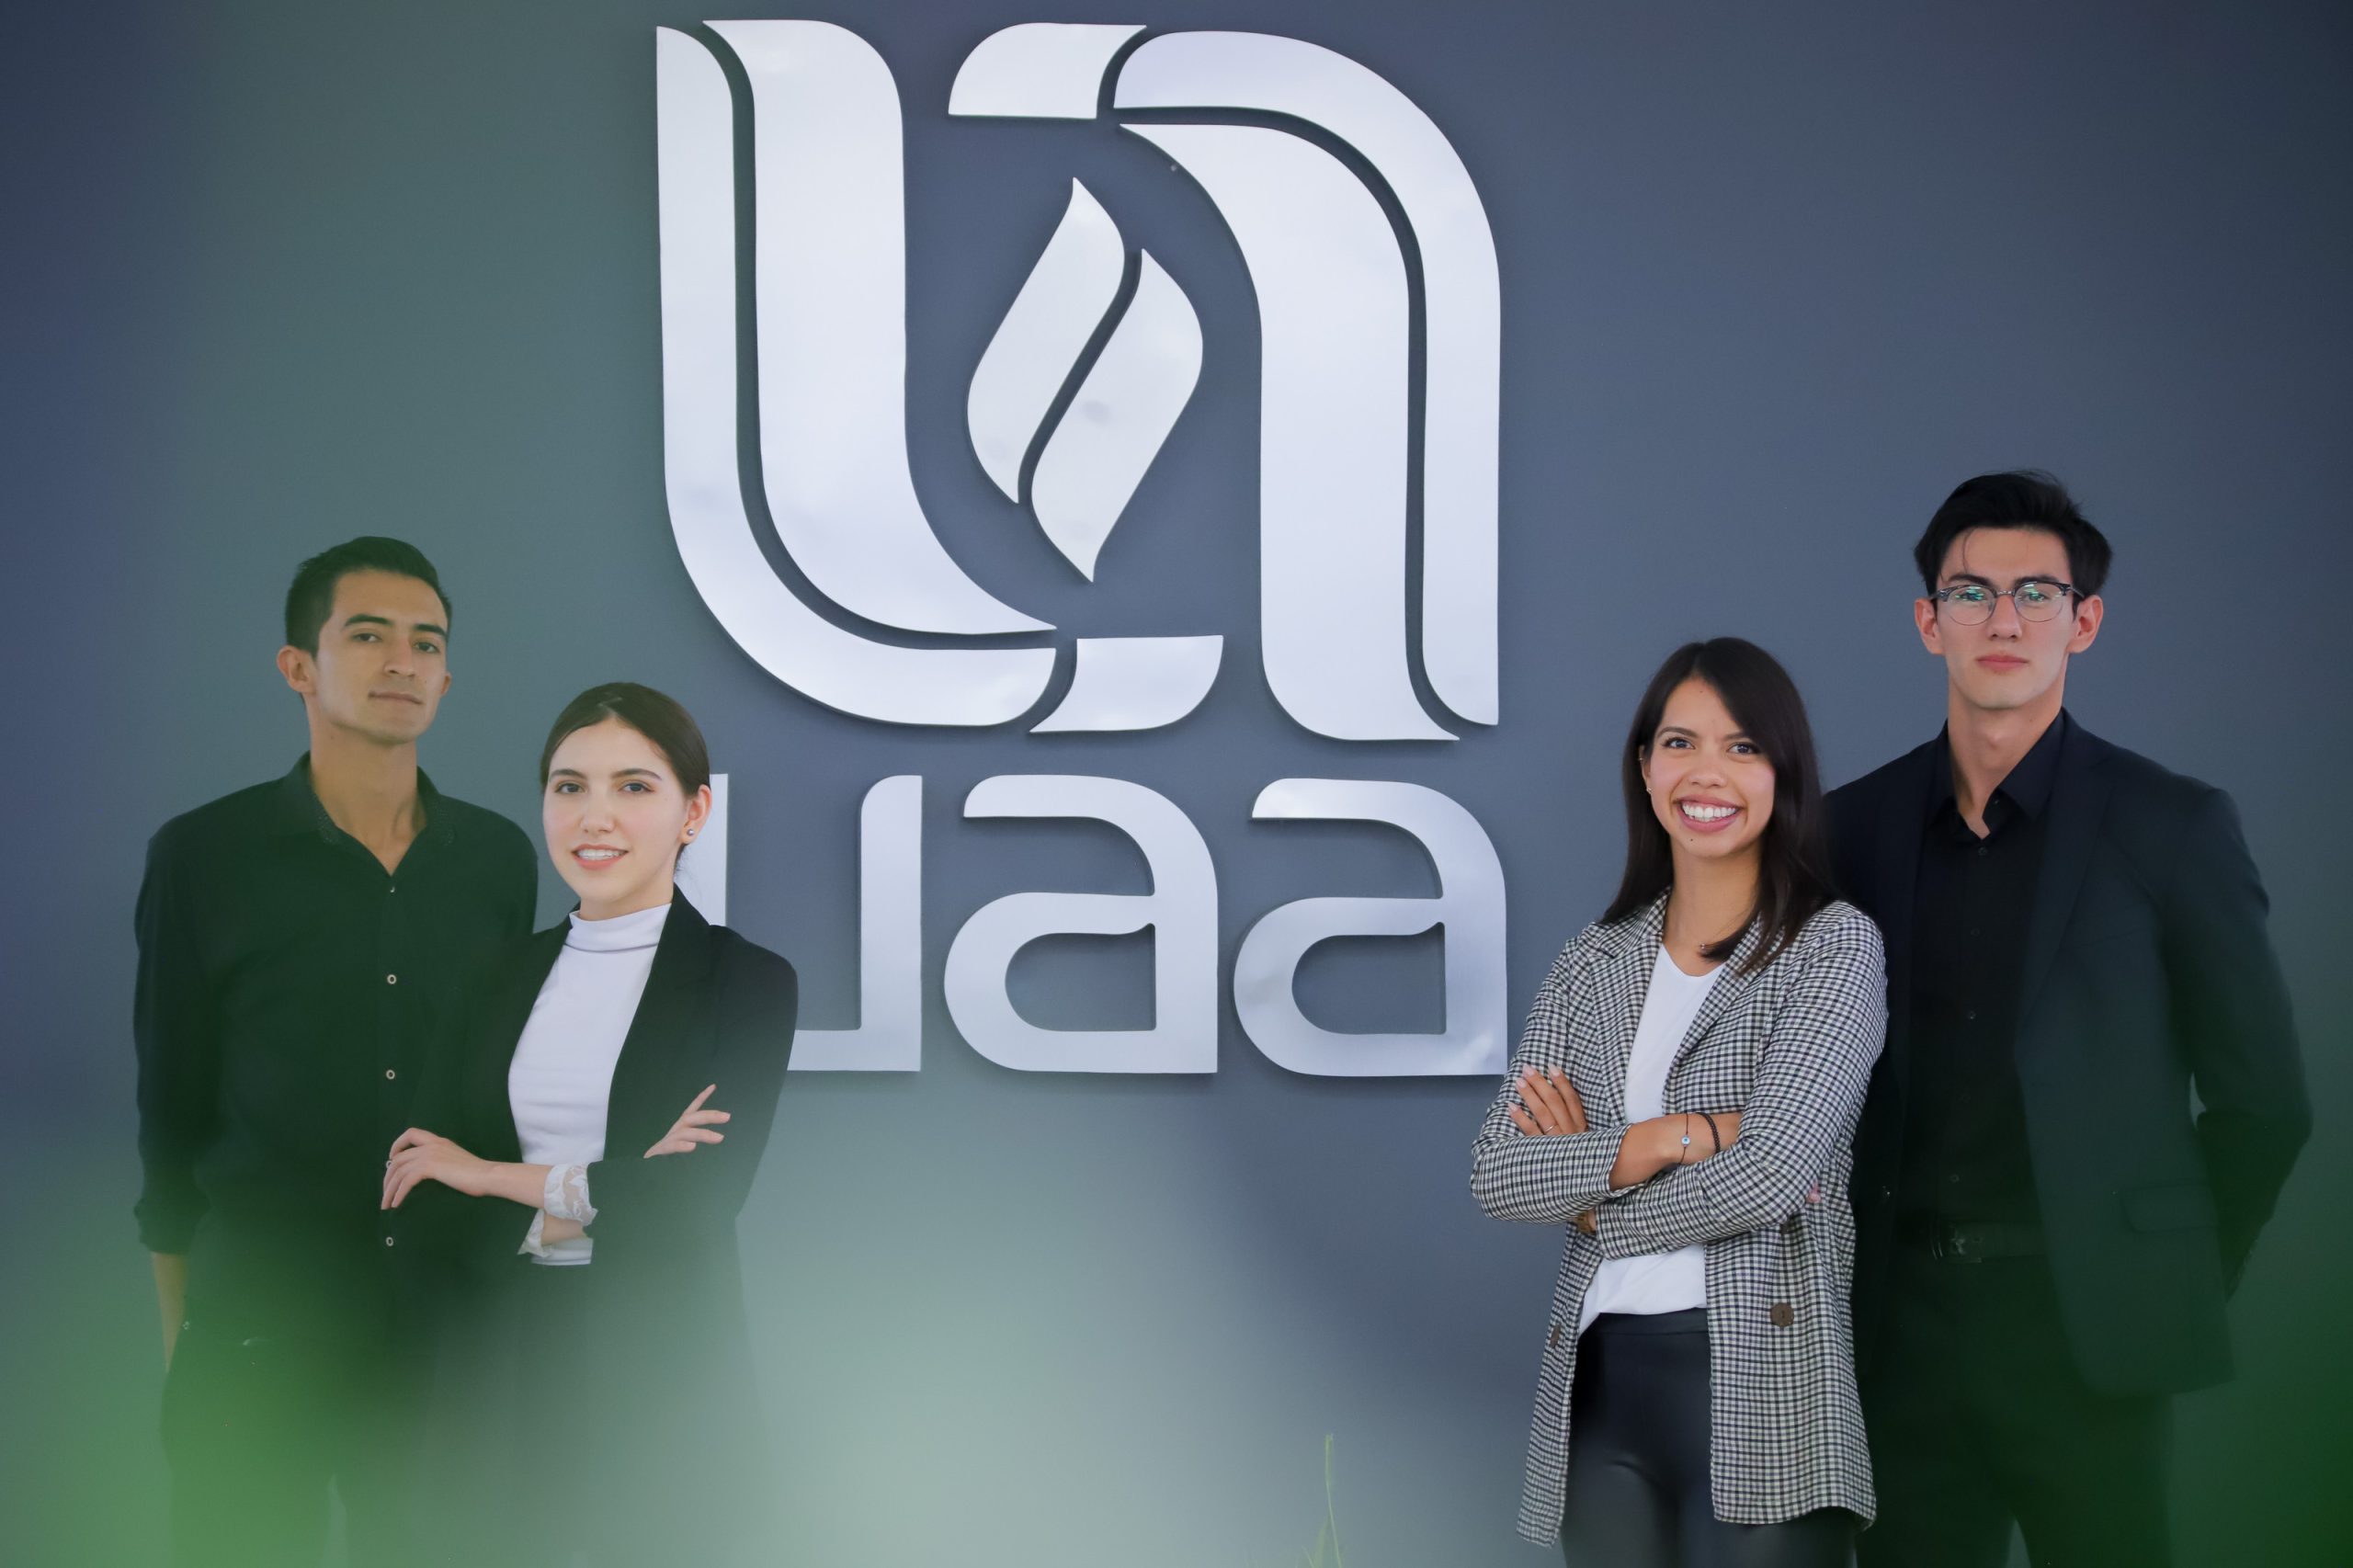 Alumnos de la UAA participarán en concurso nacional de finanzas